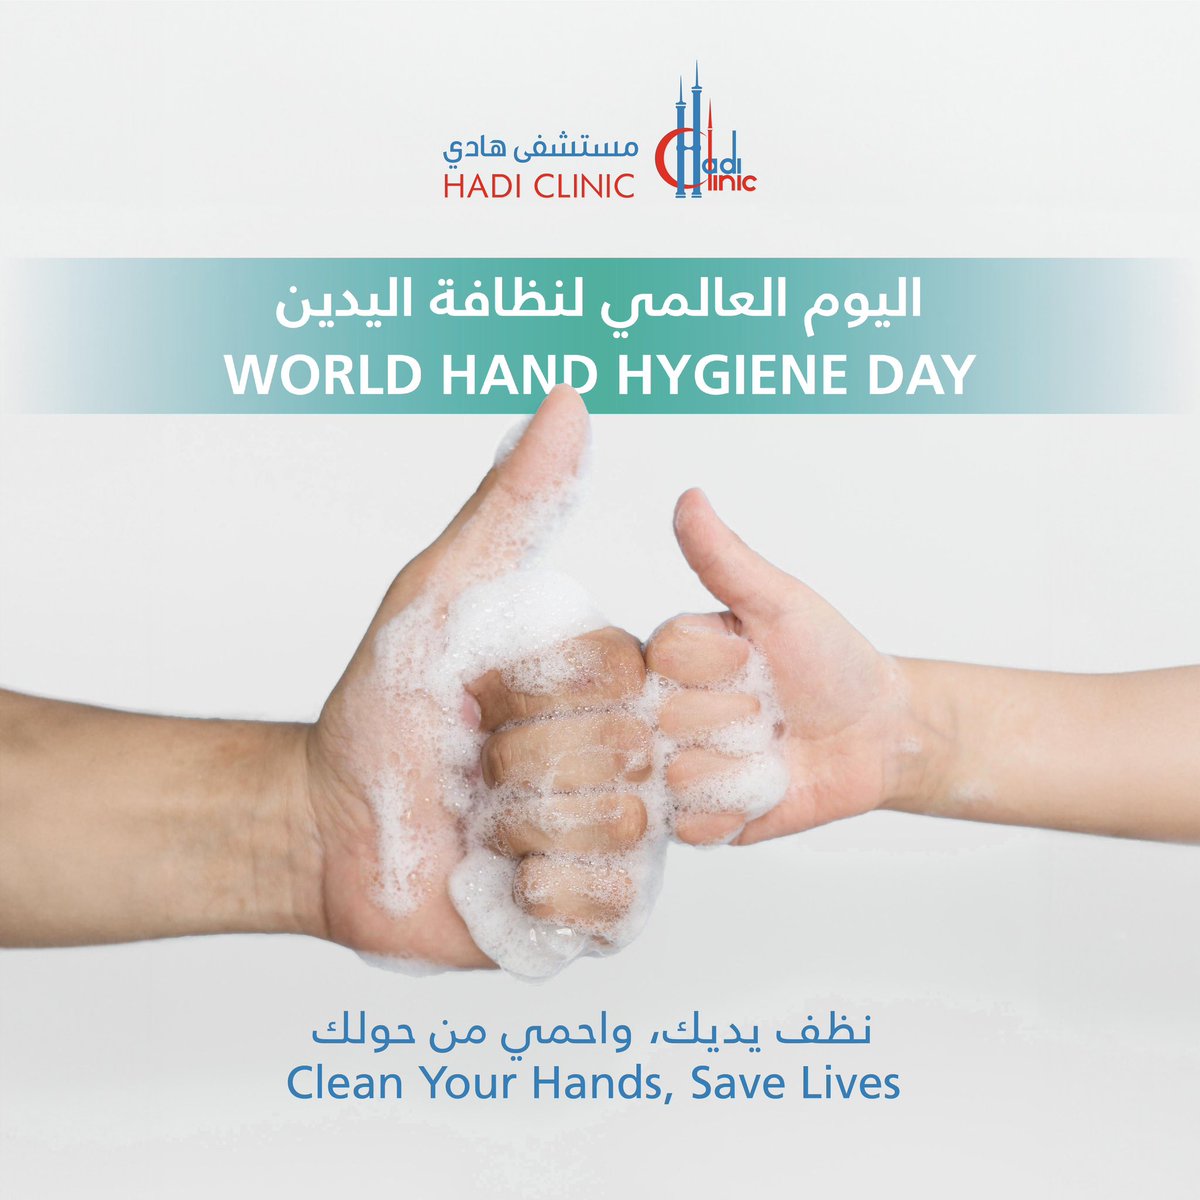 لنمد يد العون للصحة والنظافة! 
تذكر الأيدي النظيفة لا تحميك فقط ولكن تحمي الجميع من حولك. 
معًا يمكننا أن نحدث فارقًا بغسل اليدين كل مرة. 💧✋ 
#الأيدي_النظيفة_تنقذ_الأرواح 

#cleanhandssavelives